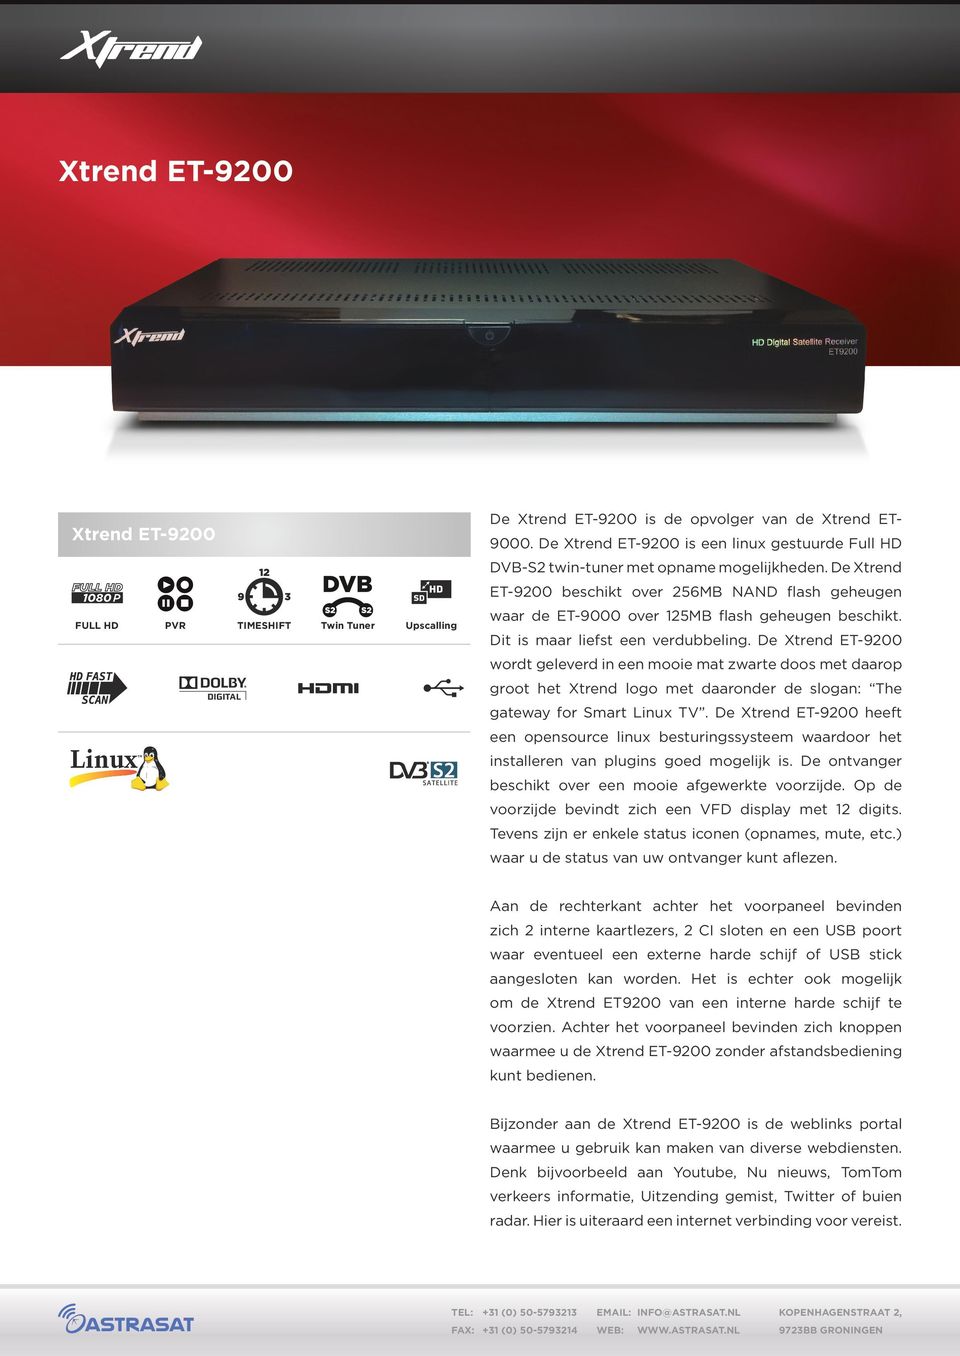 De Xtrend ET-9200 wordt geleverd in een mooie mat zwarte doos met daarop groot het Xtrend logo met daaronder de slogan: The gateway for Smart Linux TV.